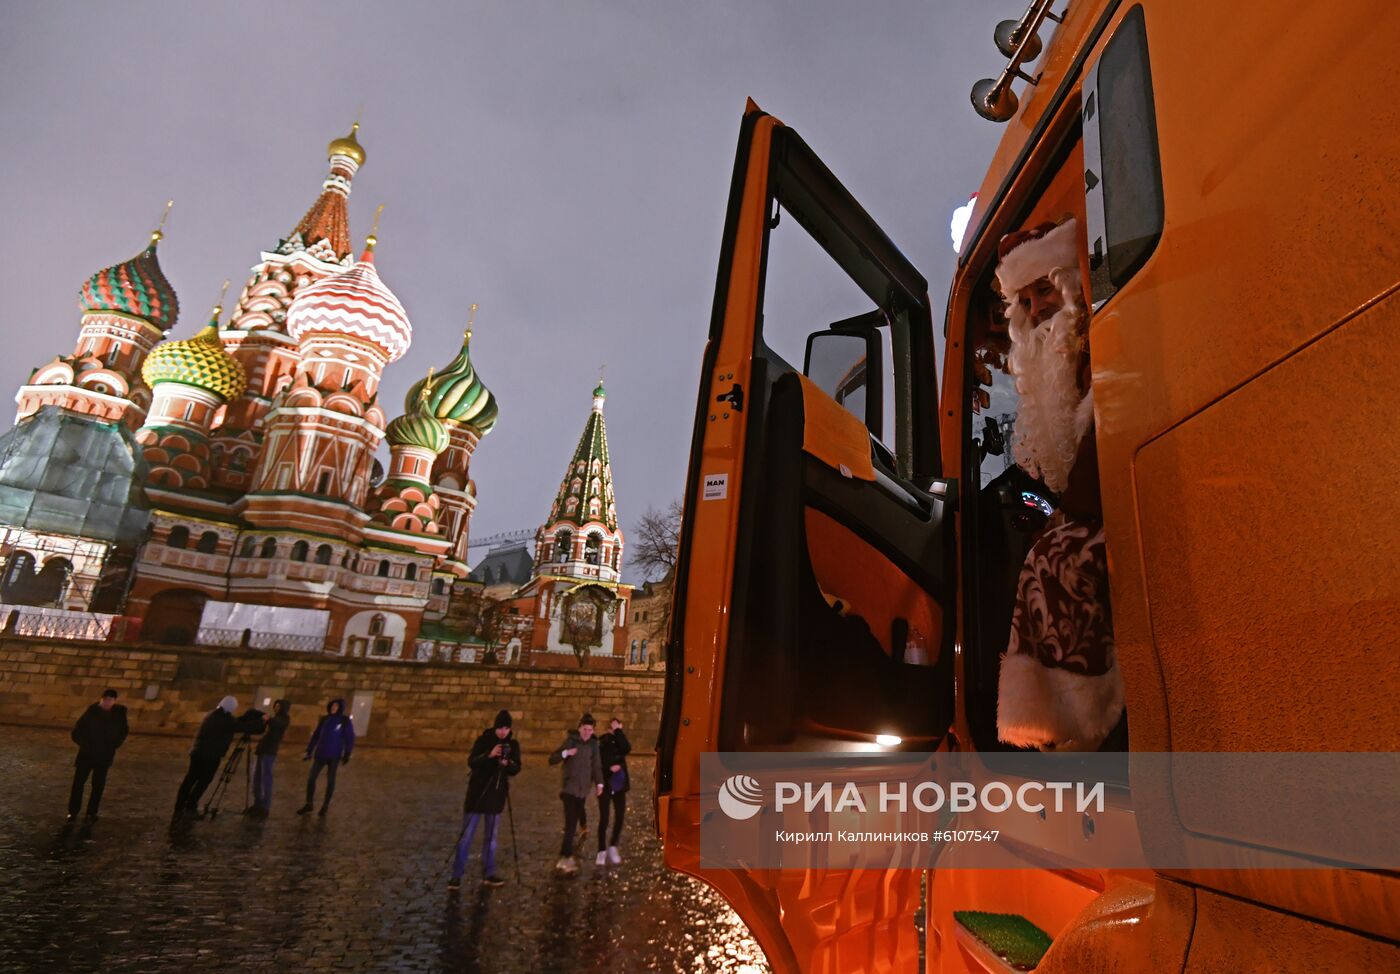 Доставка новогодней елки в Кремль